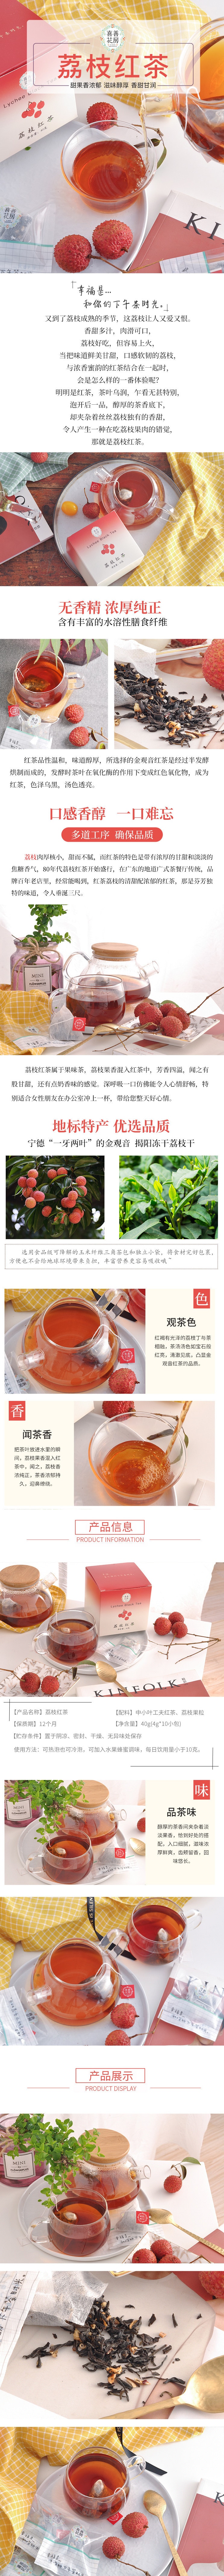 【中国直邮】喜善花房荔枝红茶10包/盒 40g